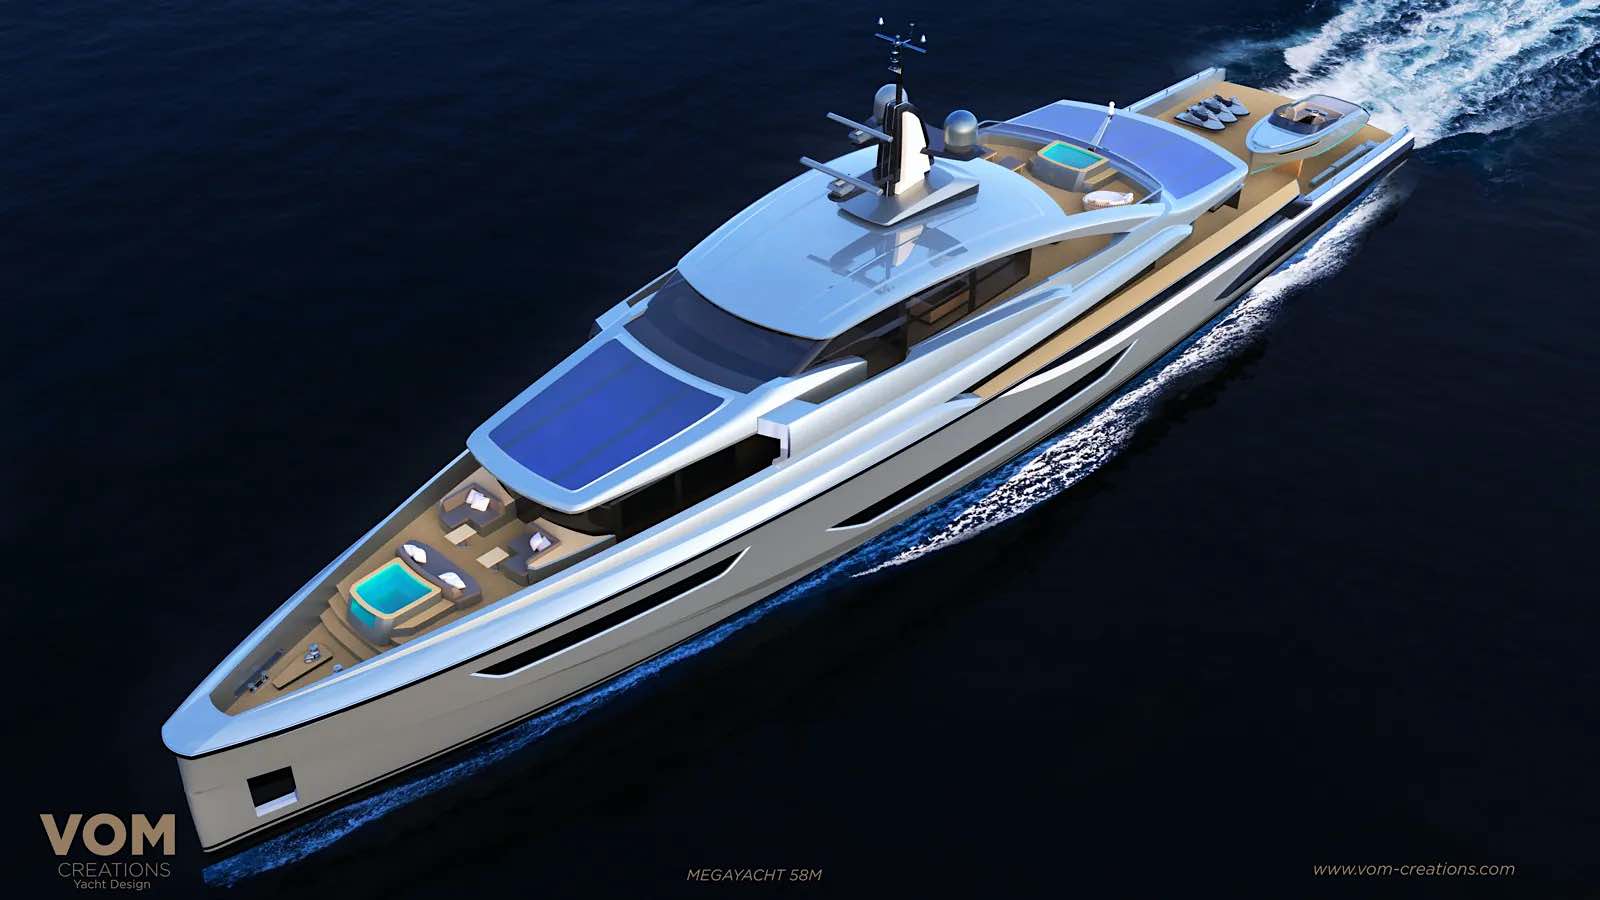 El estudio de diseño Vom Creations ha revelado una embarcación Explorer de 58 metros.